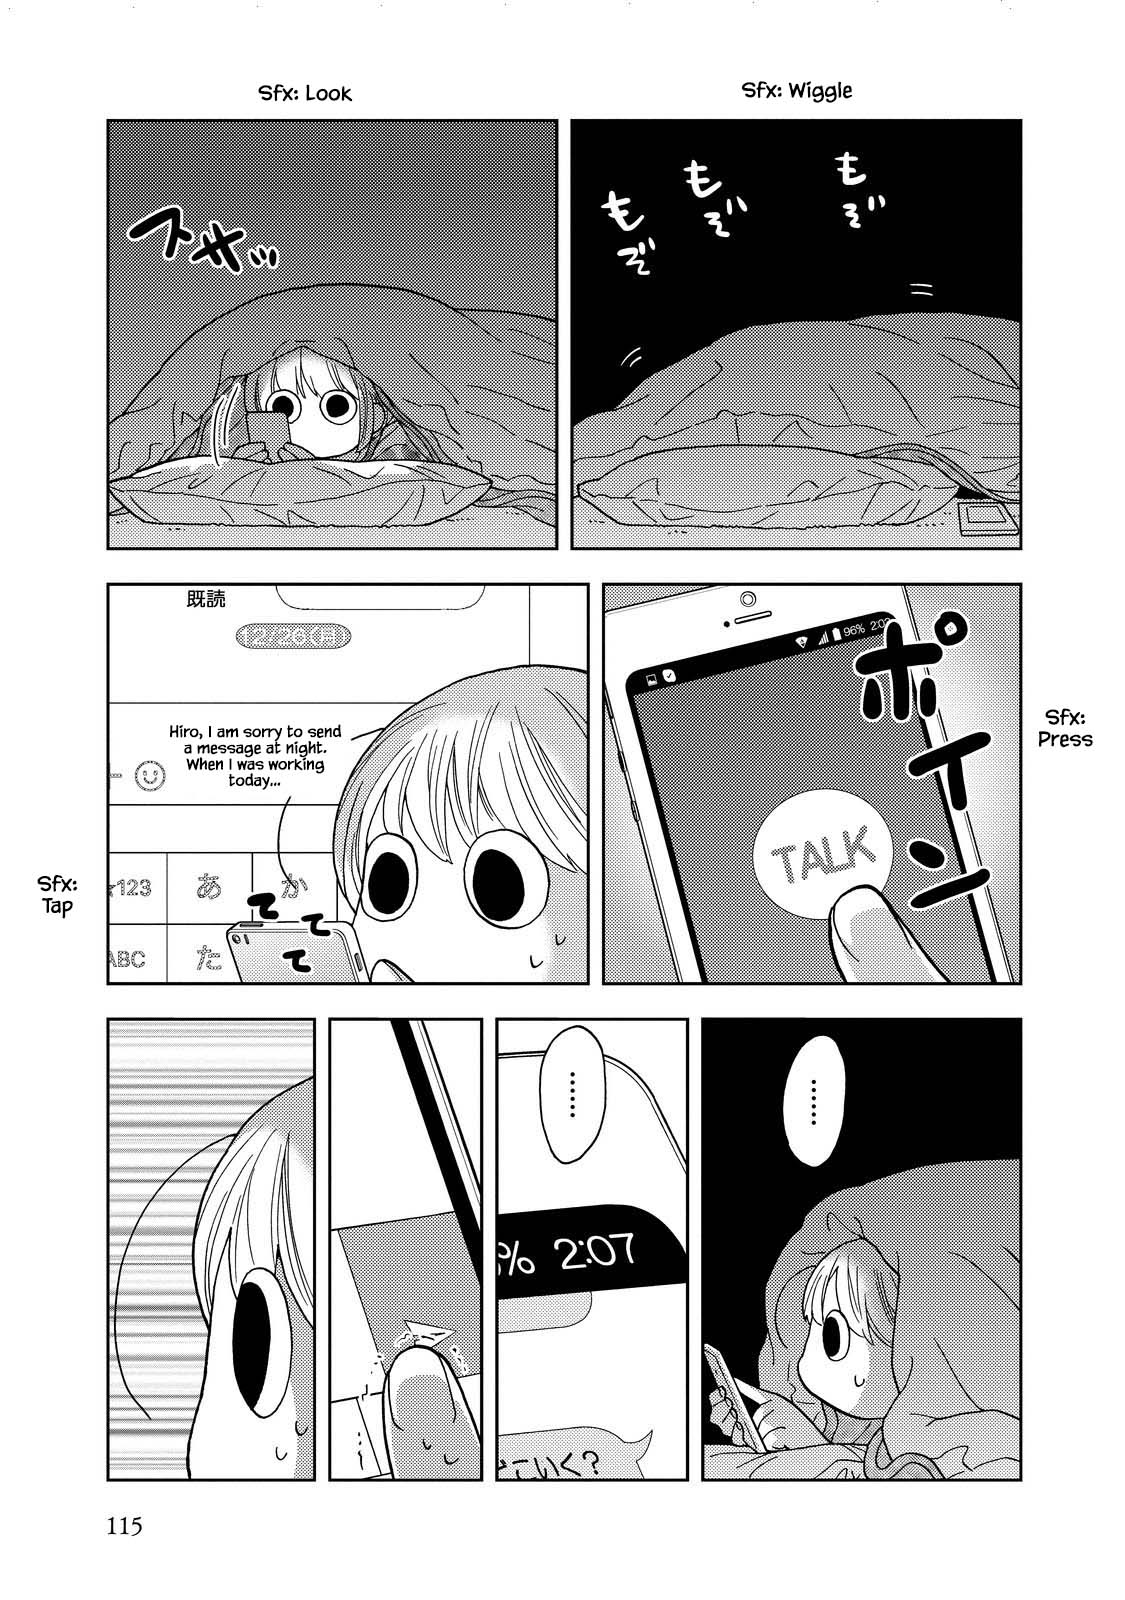 Takako-San - 25 page 5-f52b1d23